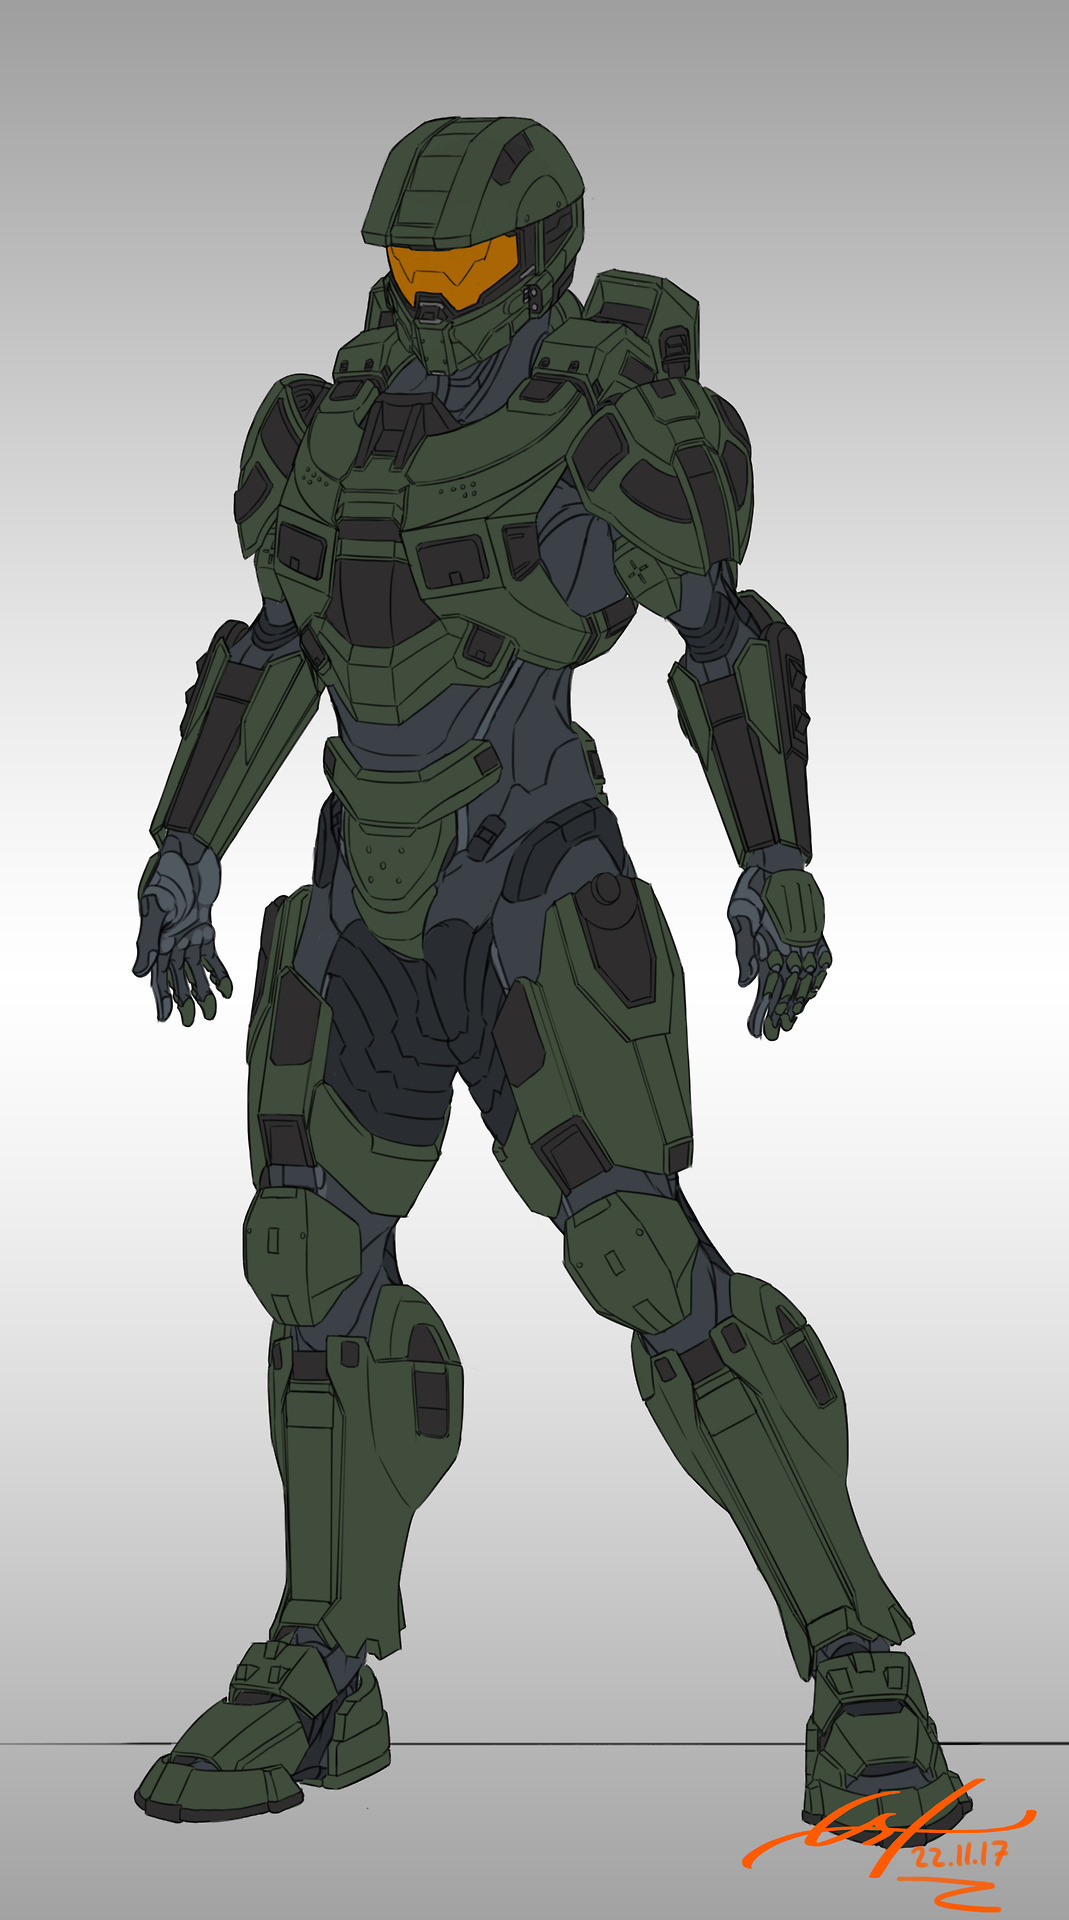 FERAIN.ART - MK VI Gen2 Refined prototype armor based on...